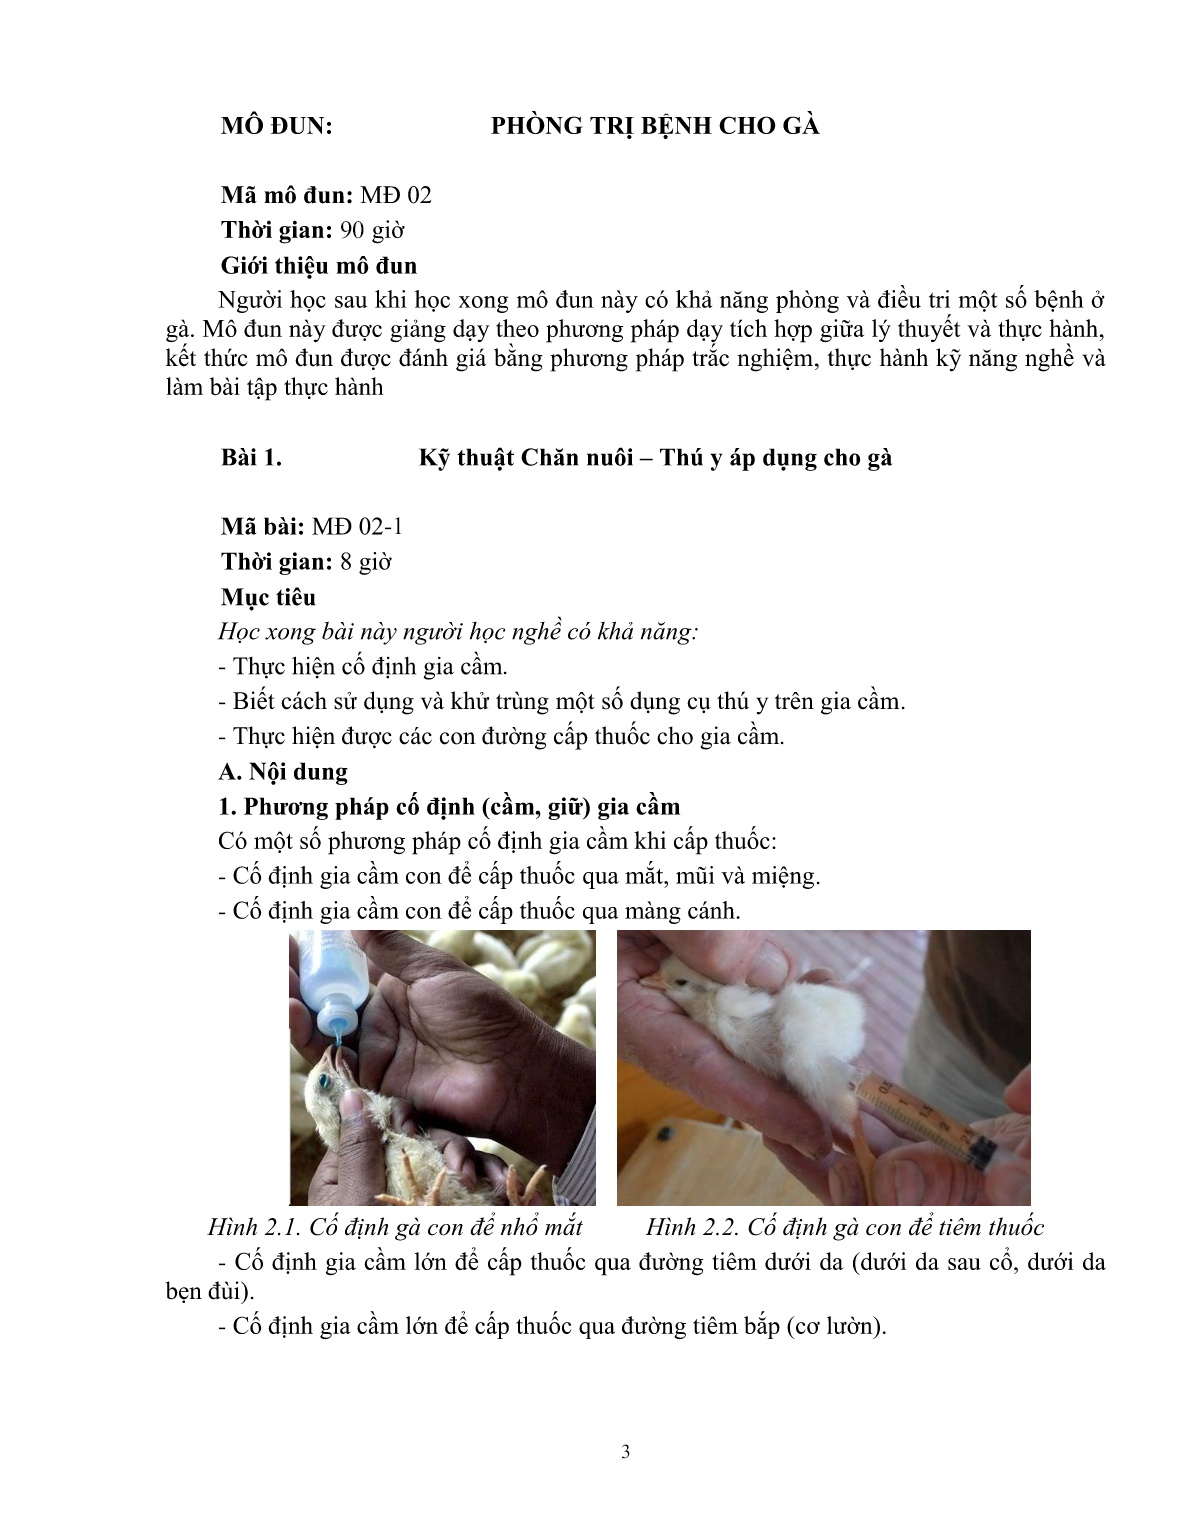 Giáo trình mô đun Phòng và trị bệnh cho gà (Trình độ: Đào tạo dưới 3 tháng) trang 4